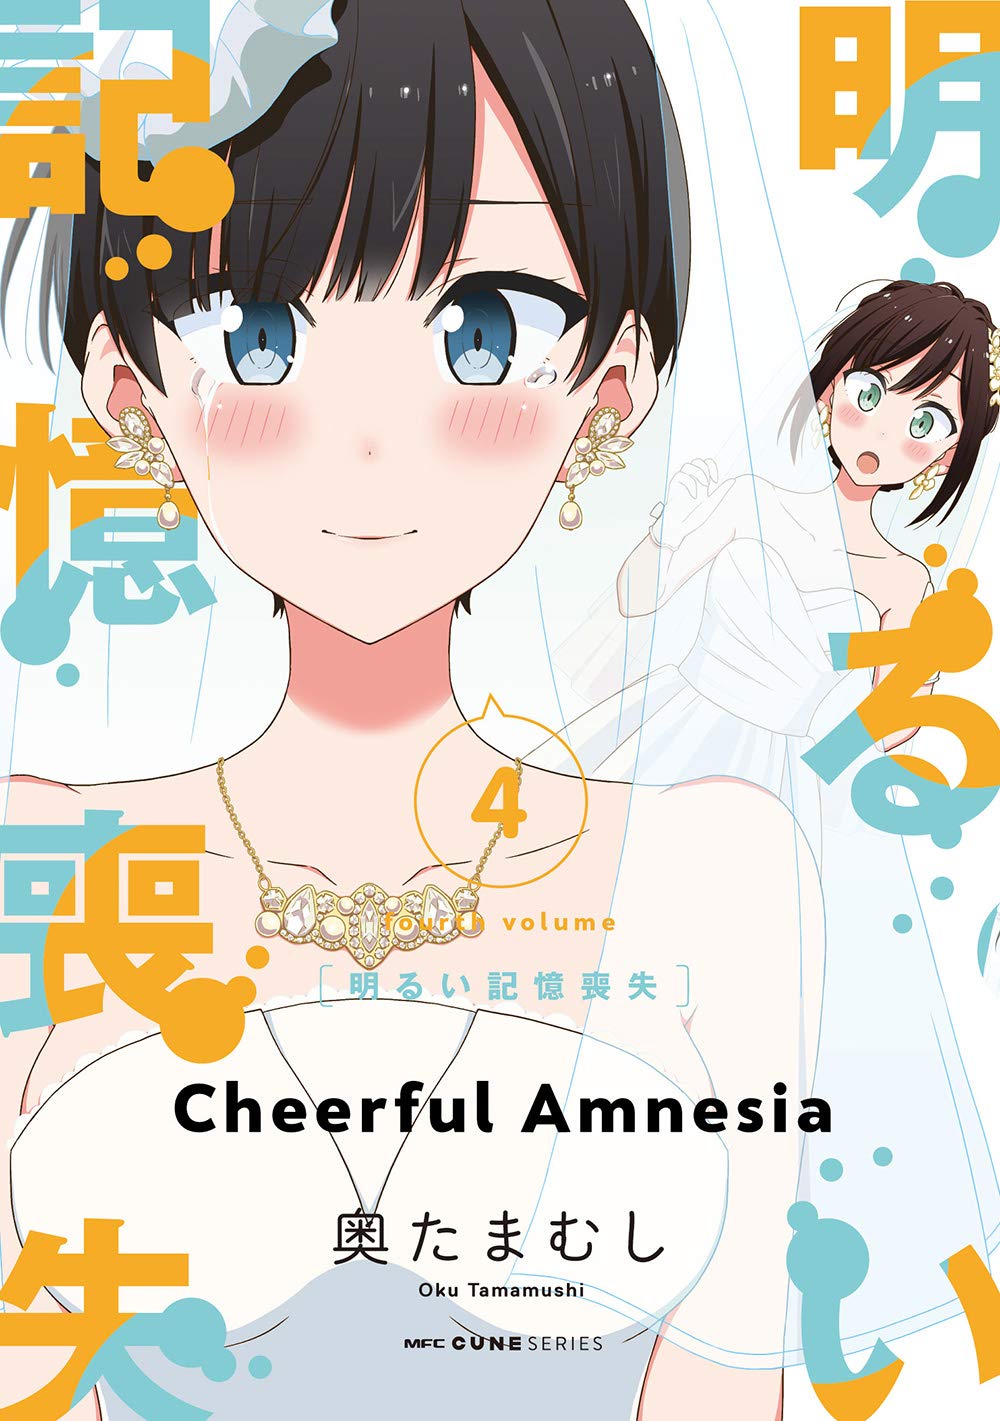 Cheerful Amnesia Manga